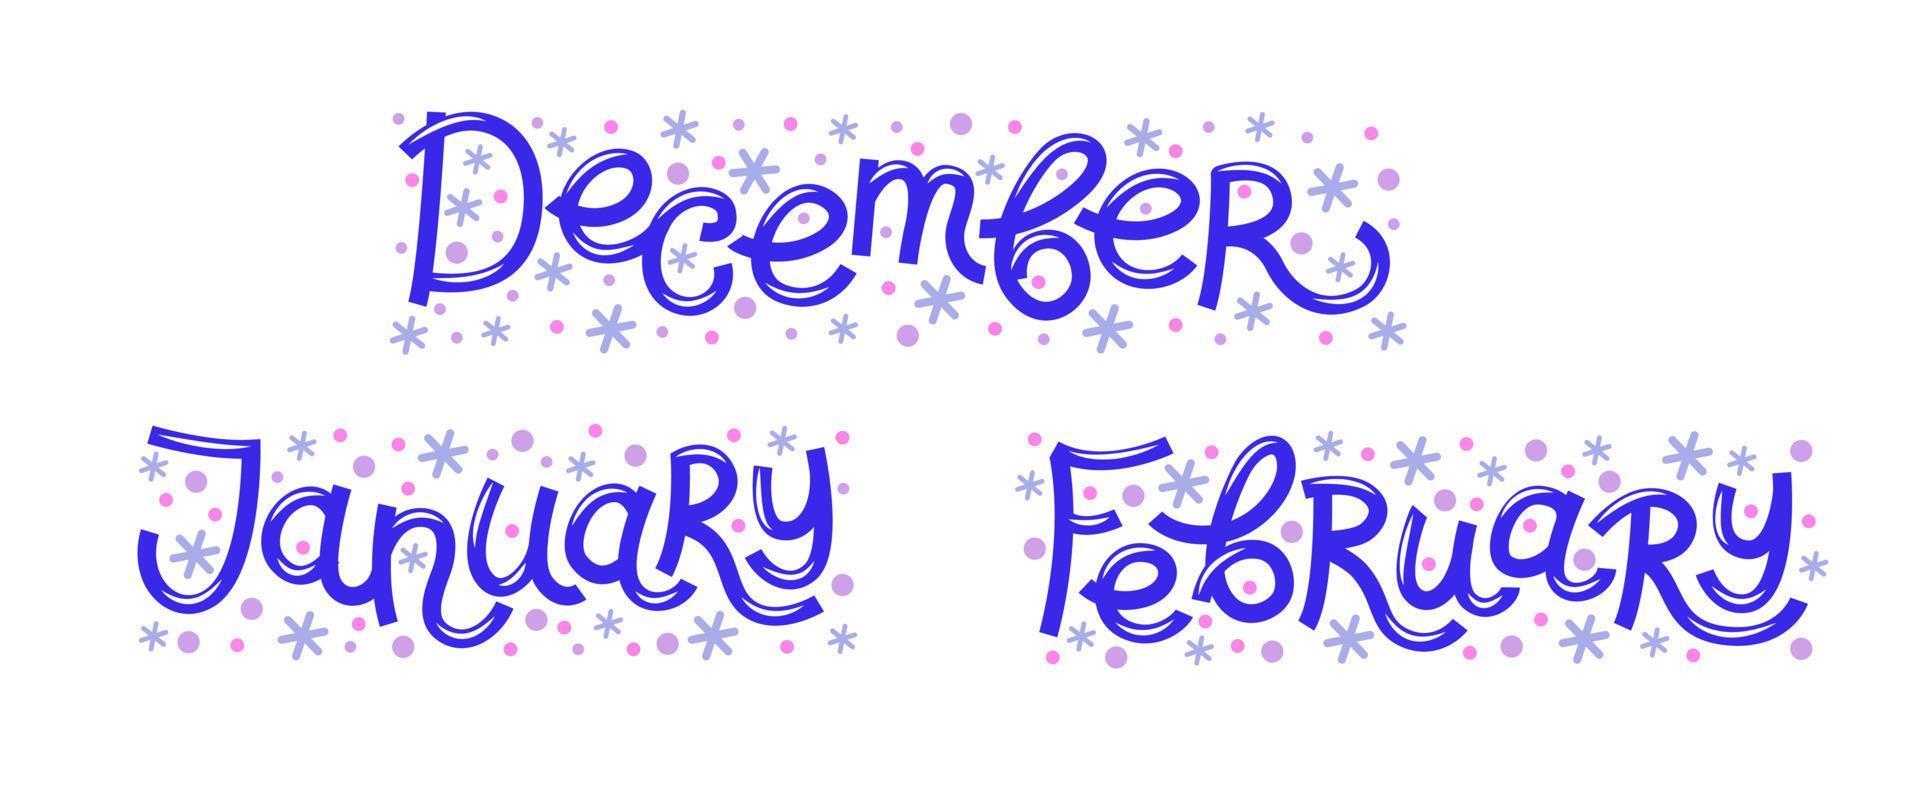 vektor uppsättning med snöflingor ord vinter- månader - december, januari, februari.